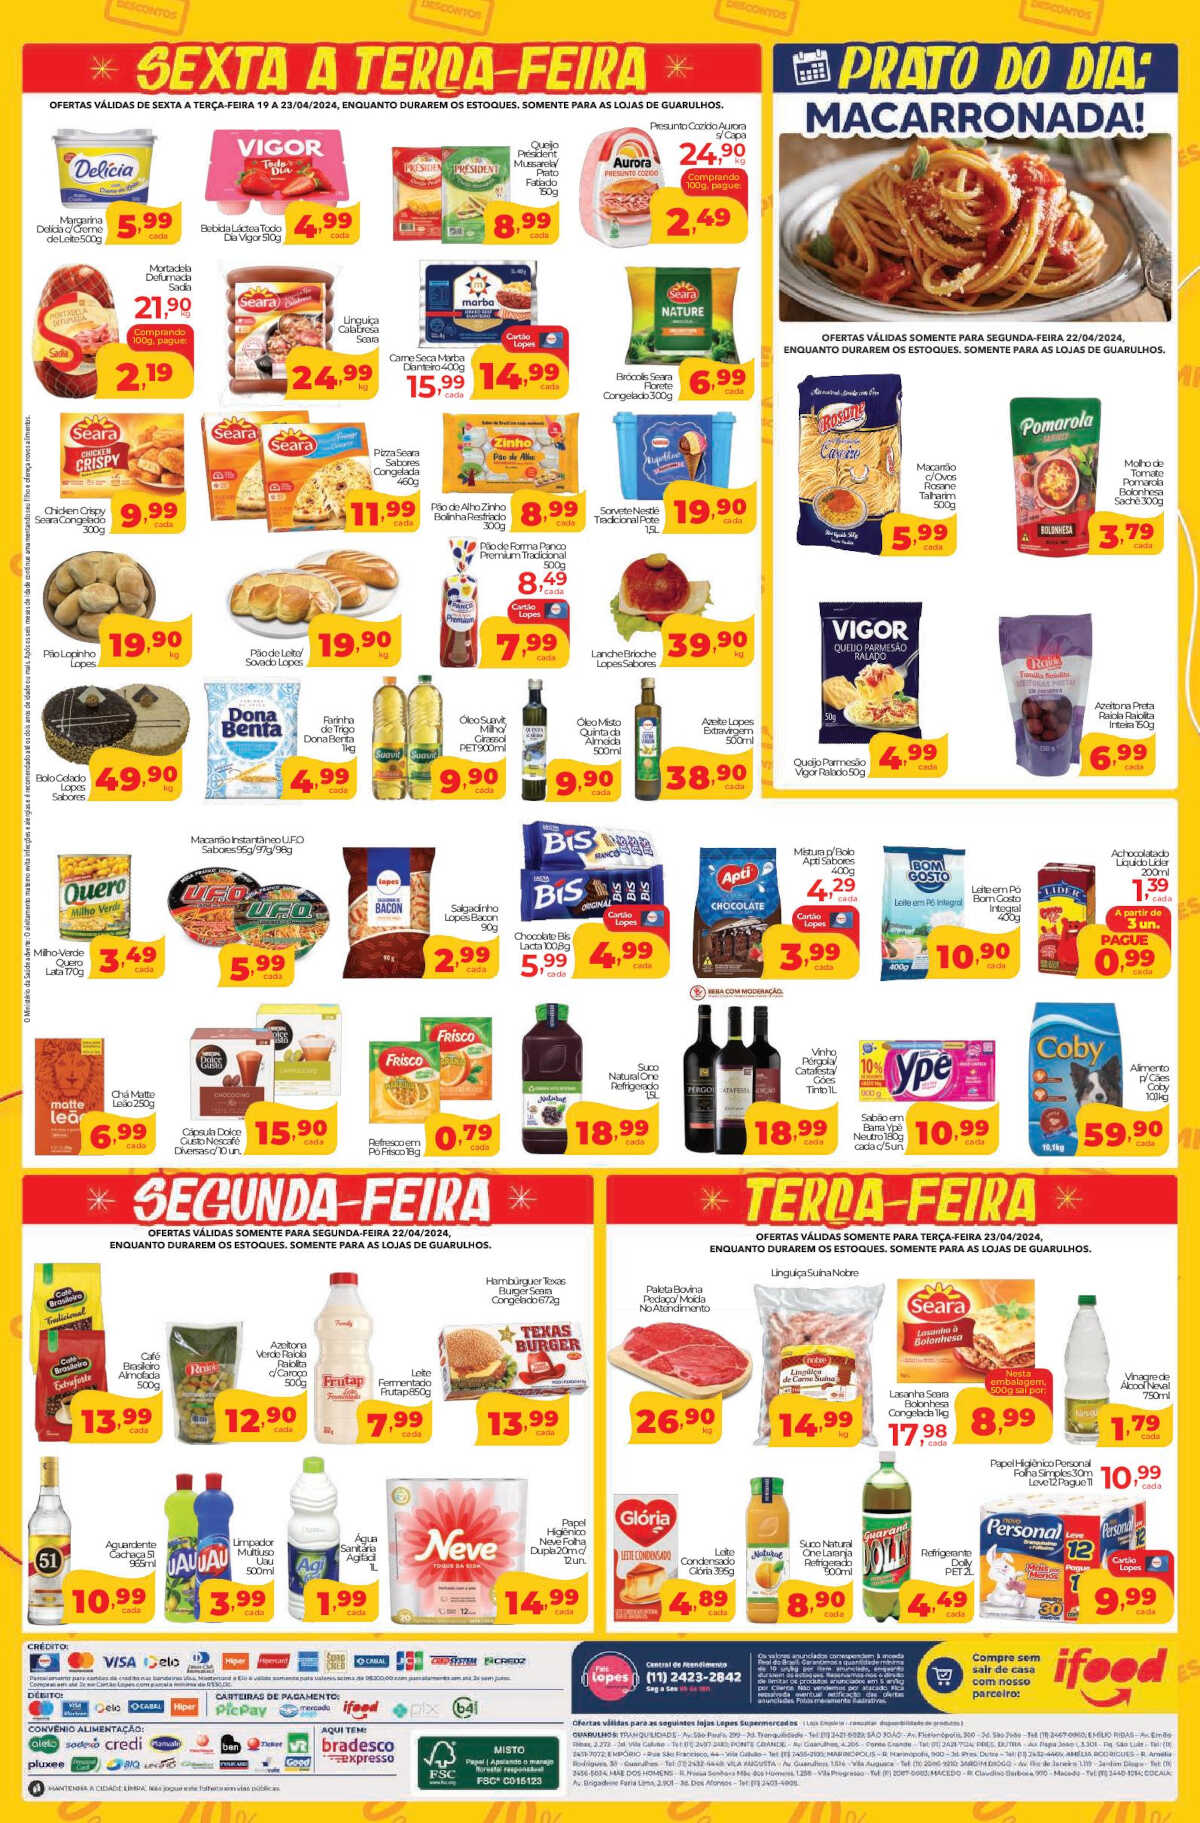 Ofertas Lopes Supermercados até 23/04